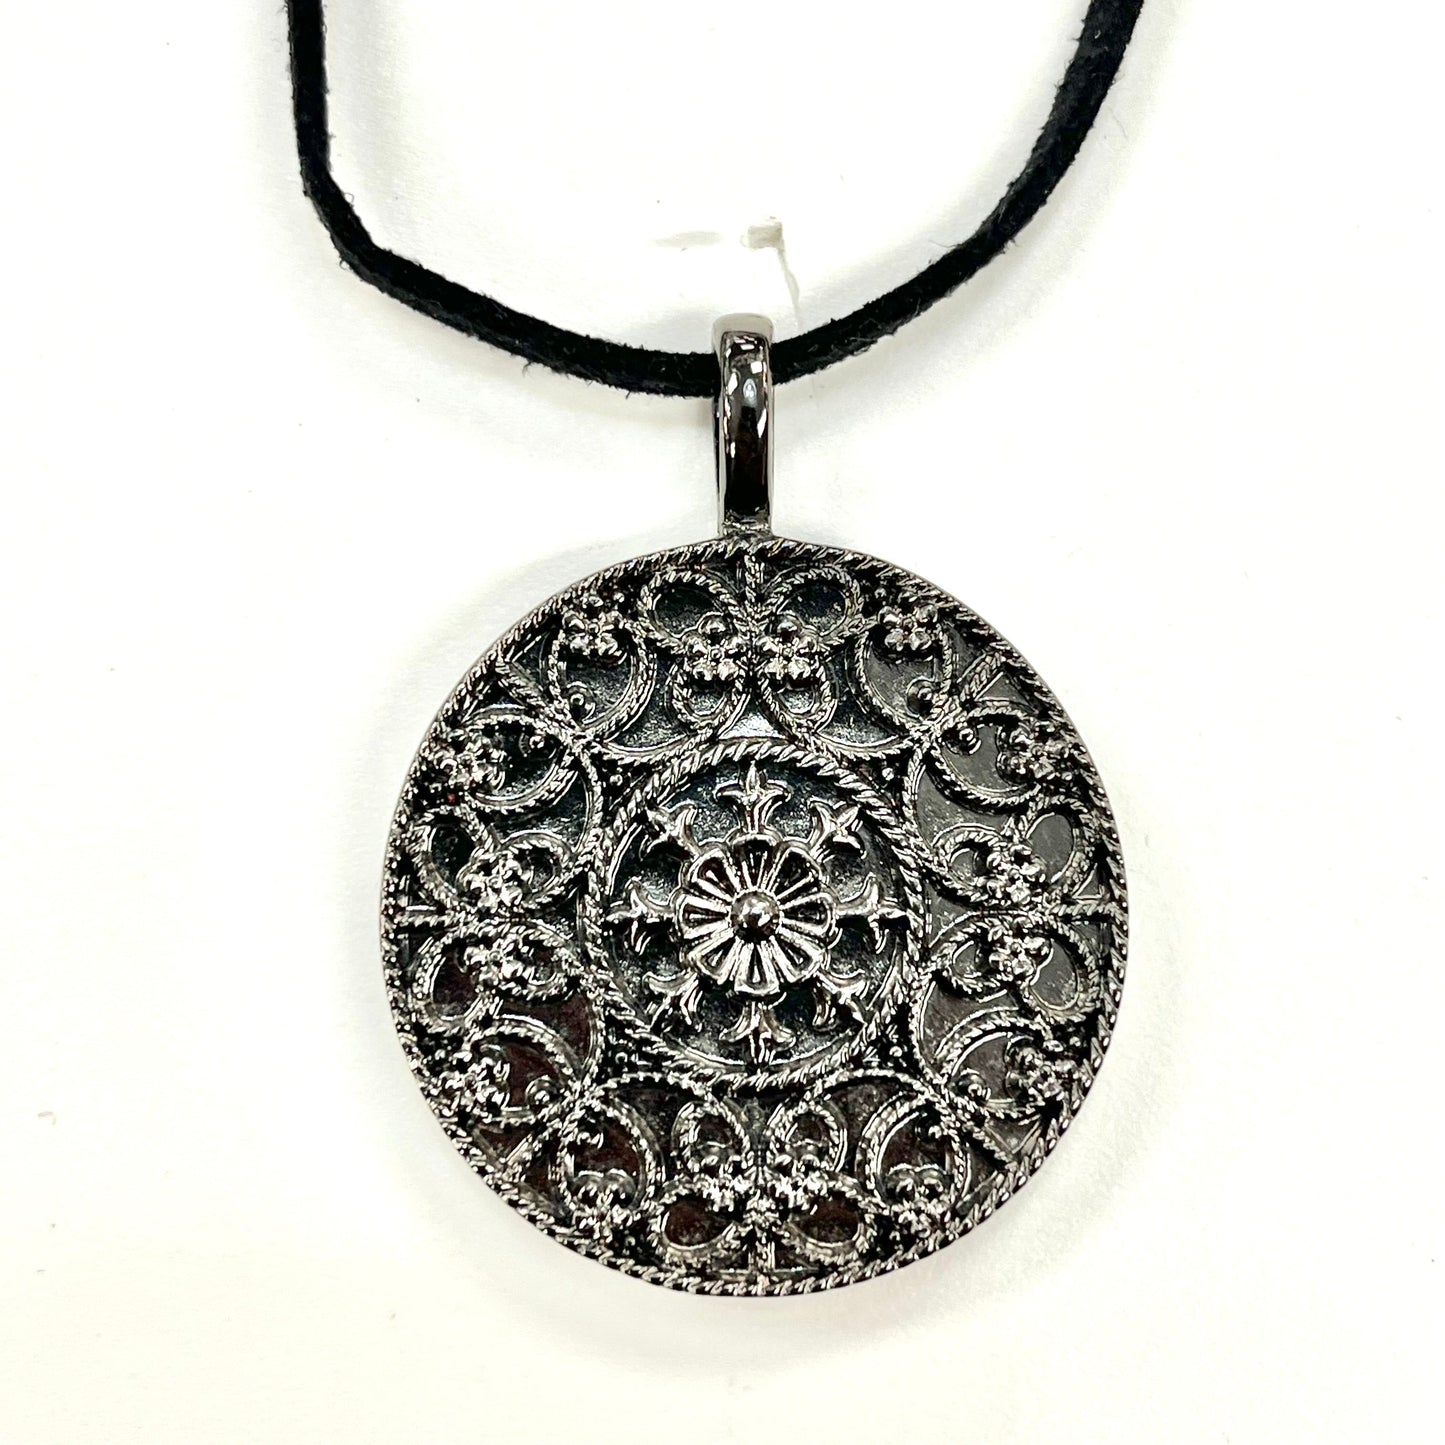 Necklace Charm By Lia Sophia Jewelry